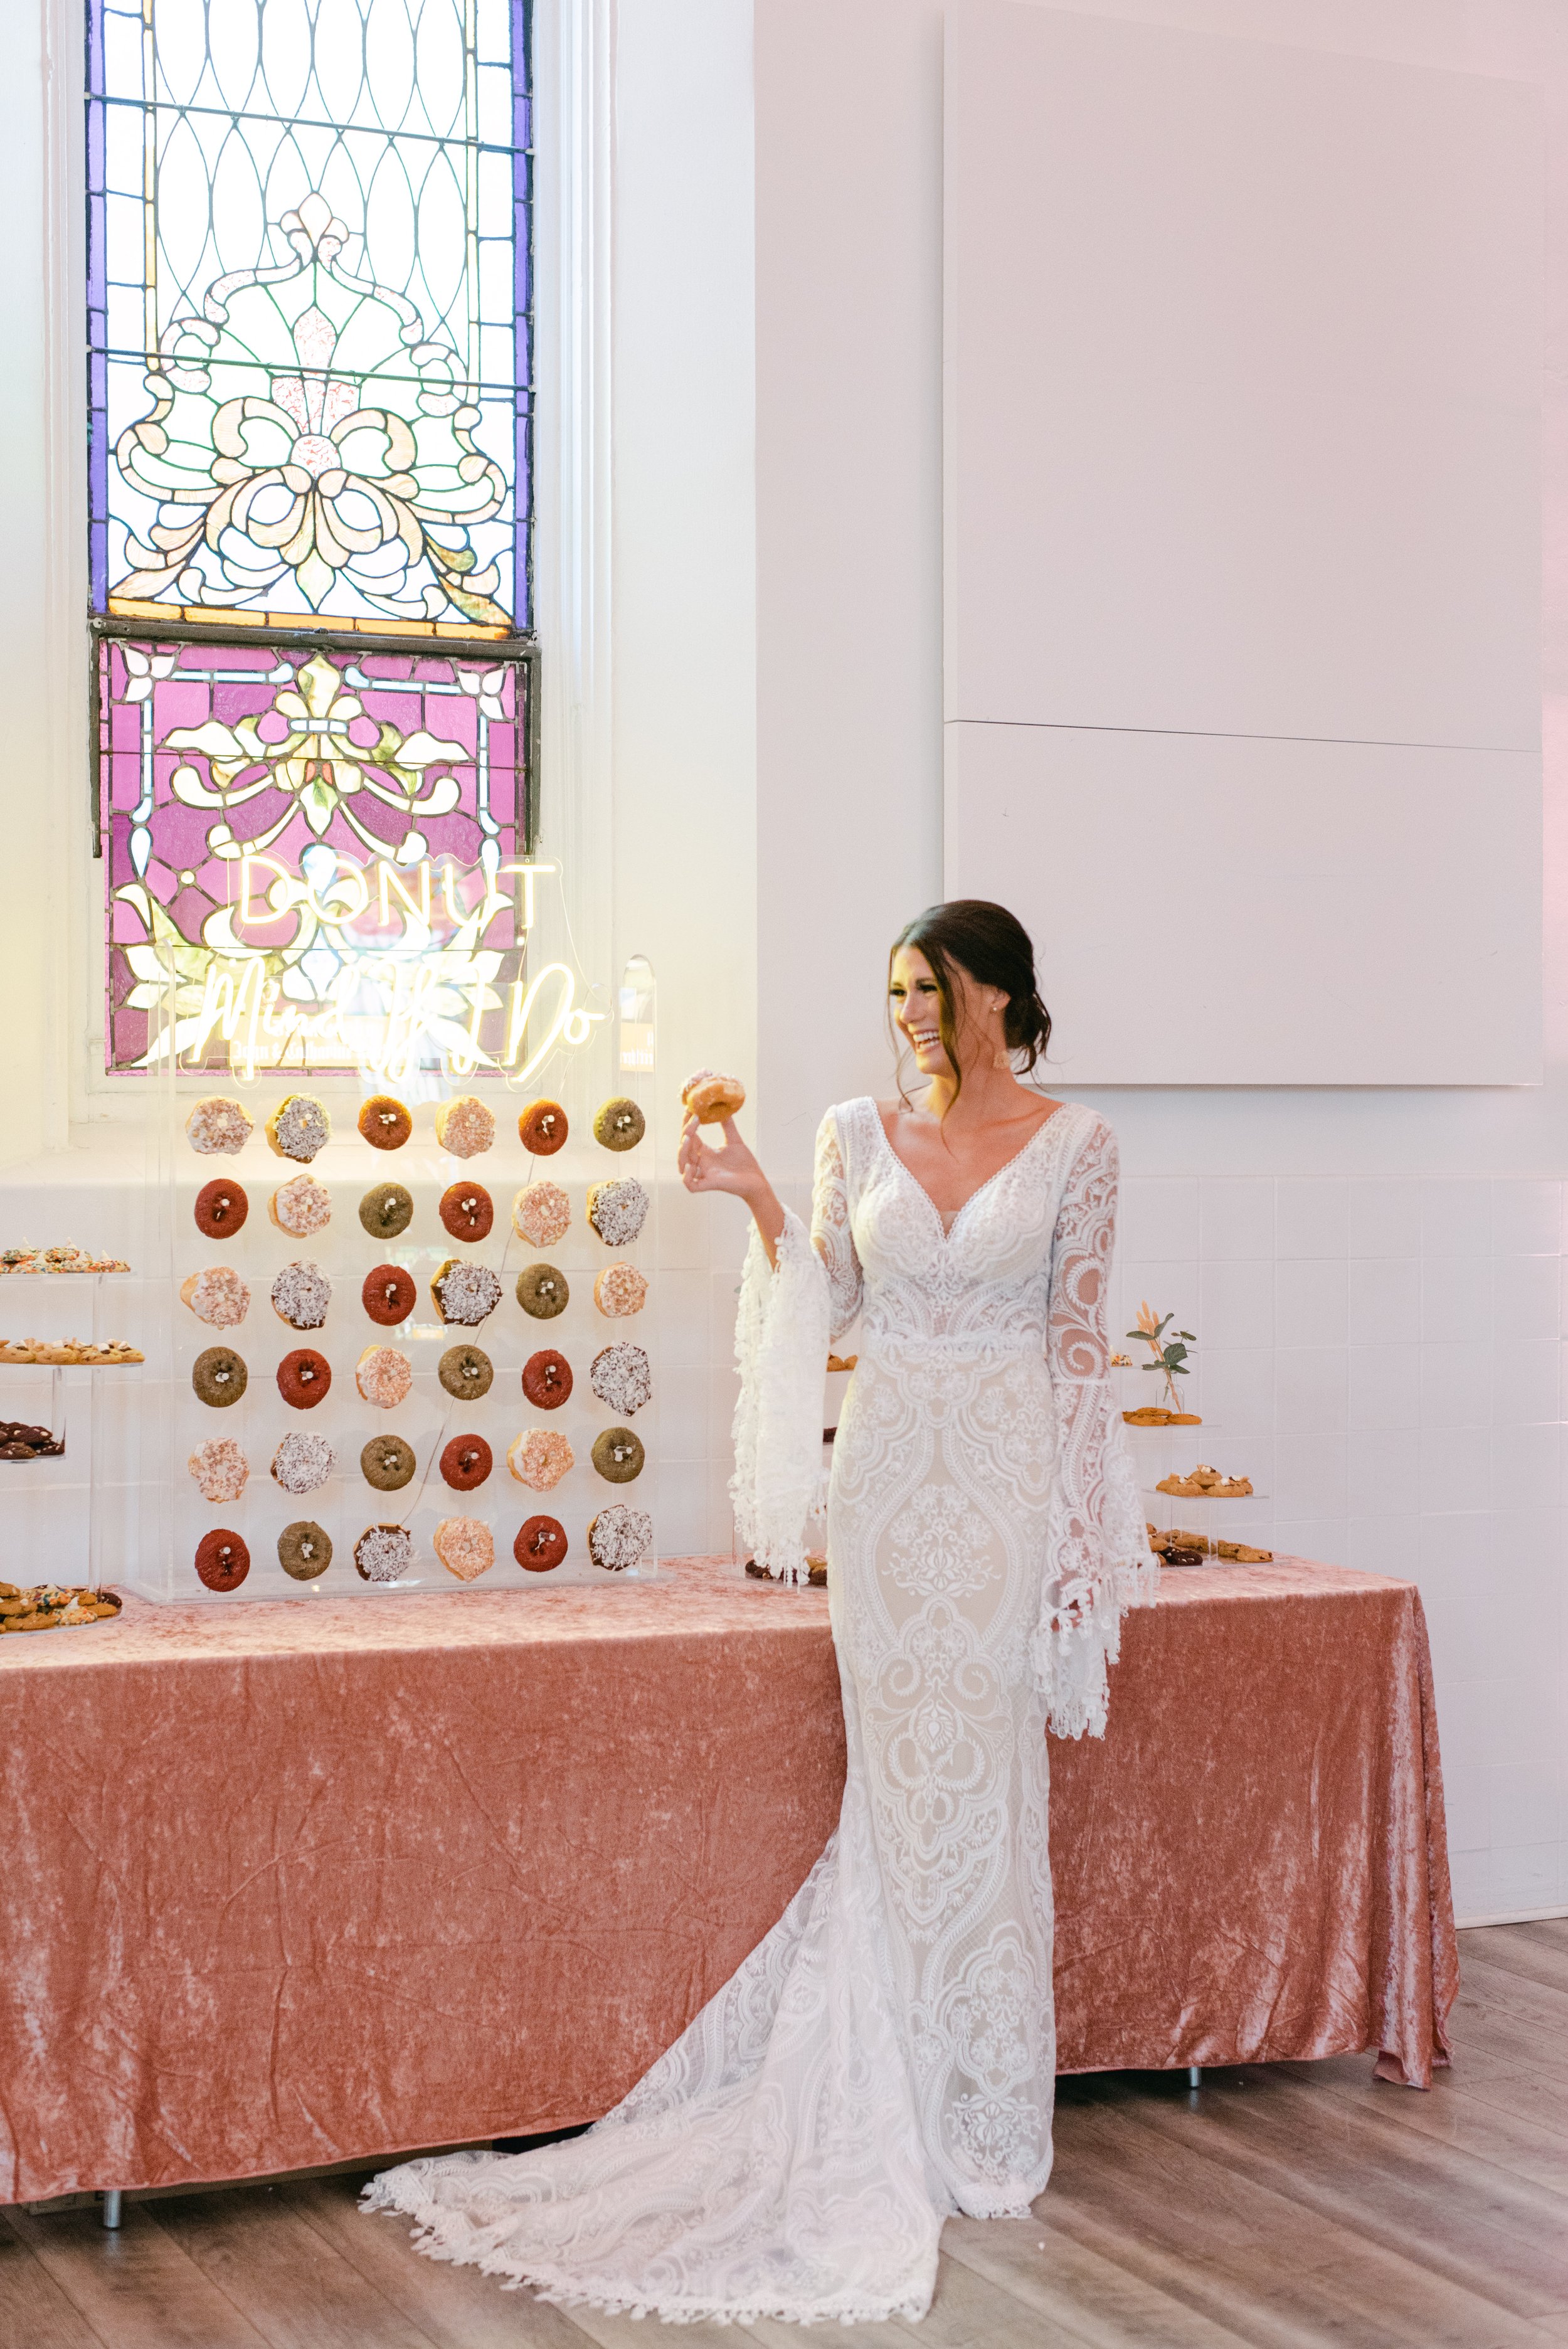 Elegant Donut Wall for Wedding